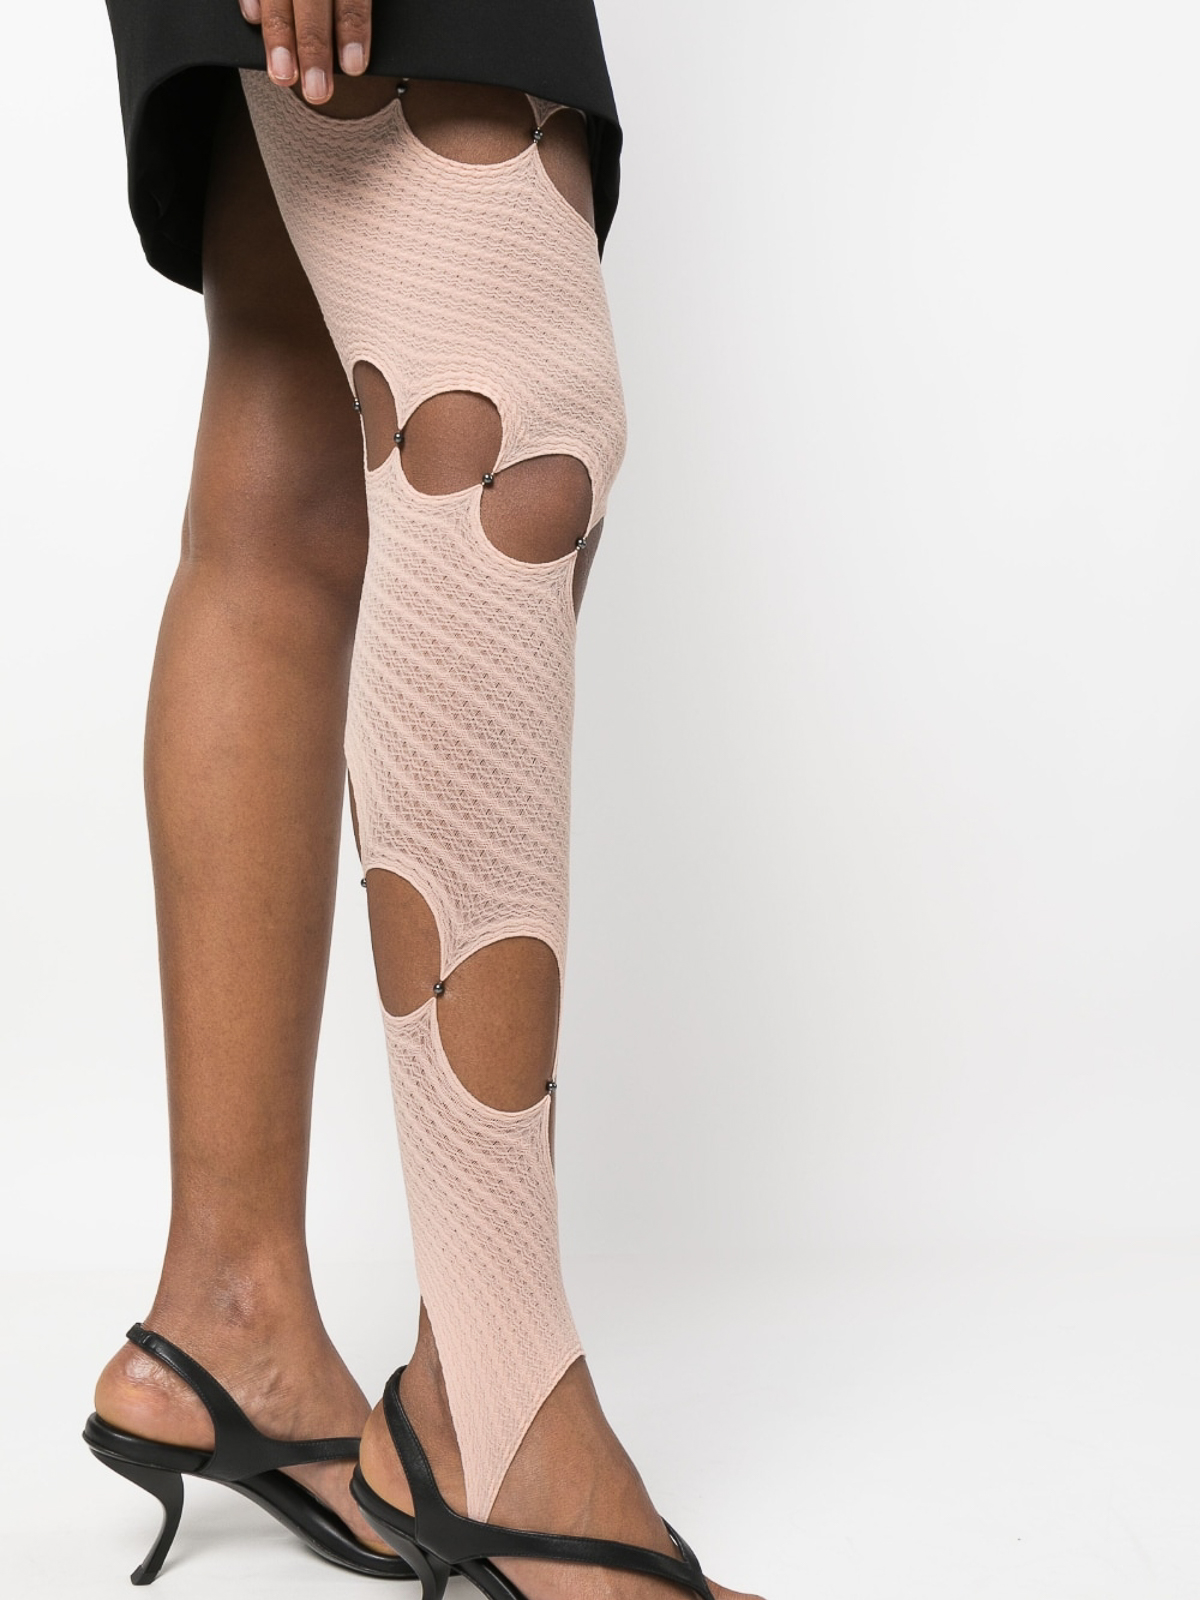 Leopard Cut Out Lace knee Leggings Women's Medium | eBay